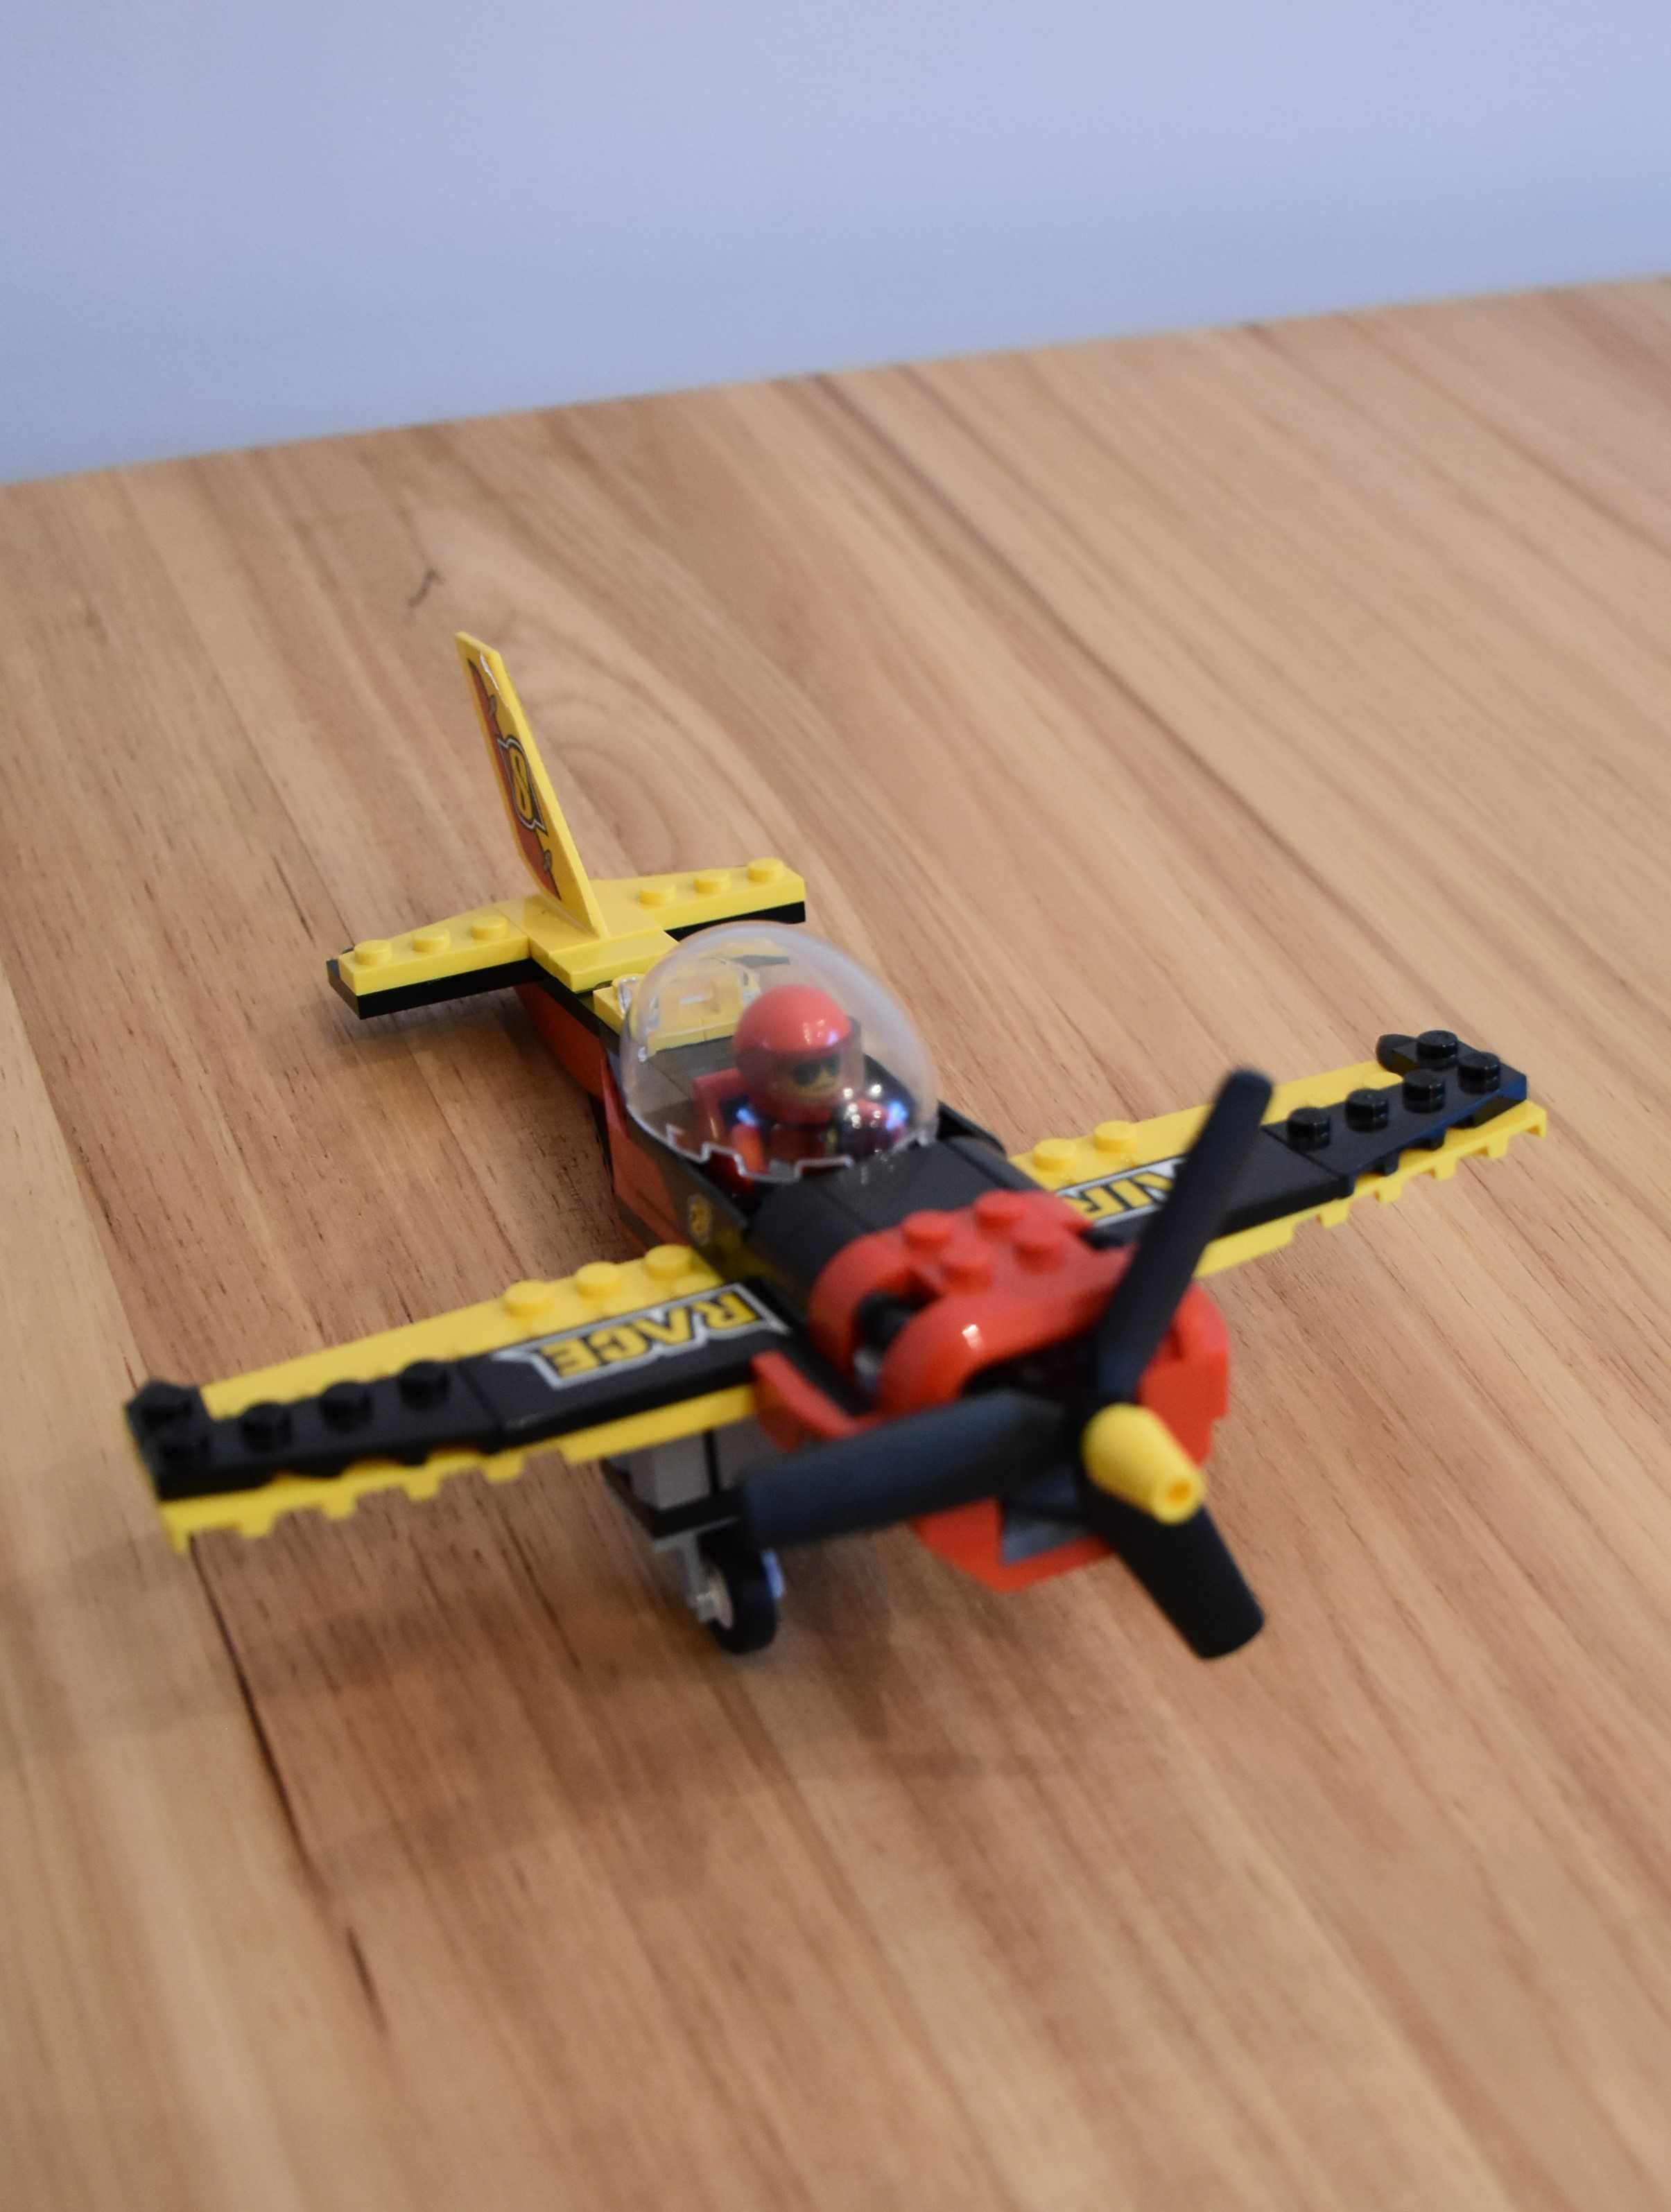 60144 Lego City Samolot wyścigowy MISB